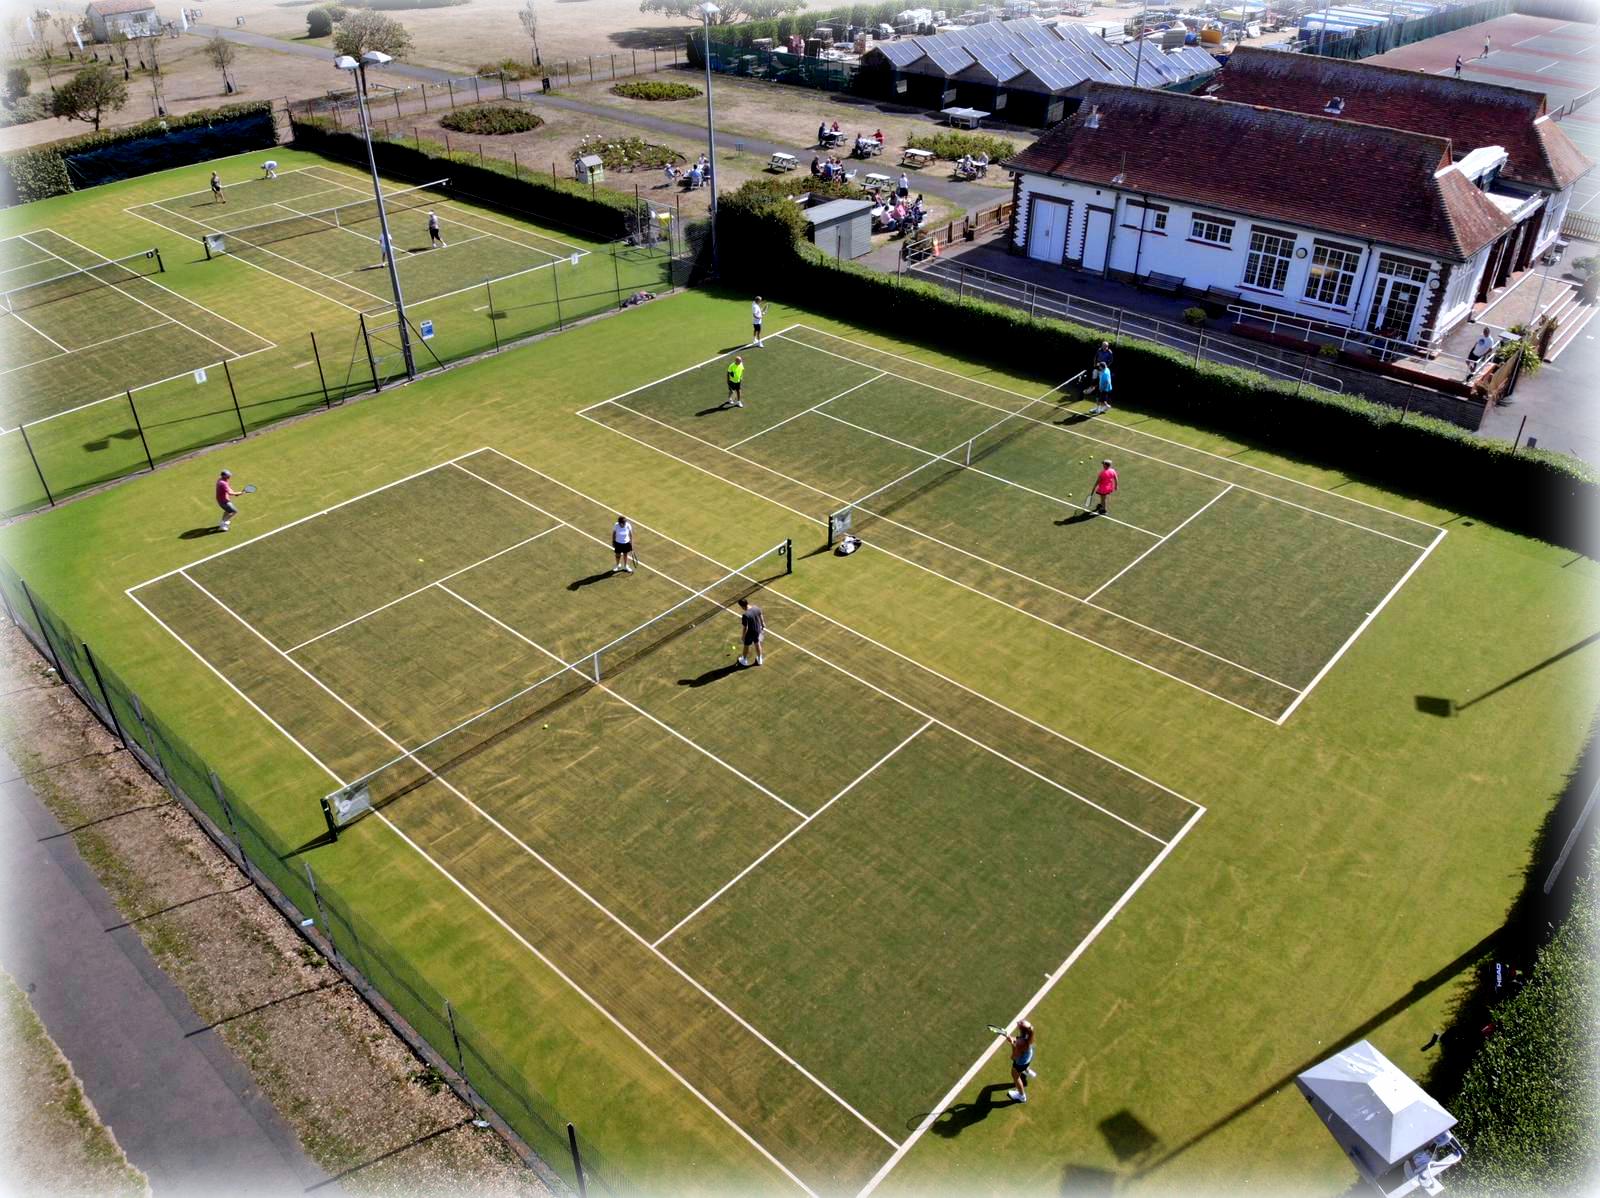 Southsea Tennis Club